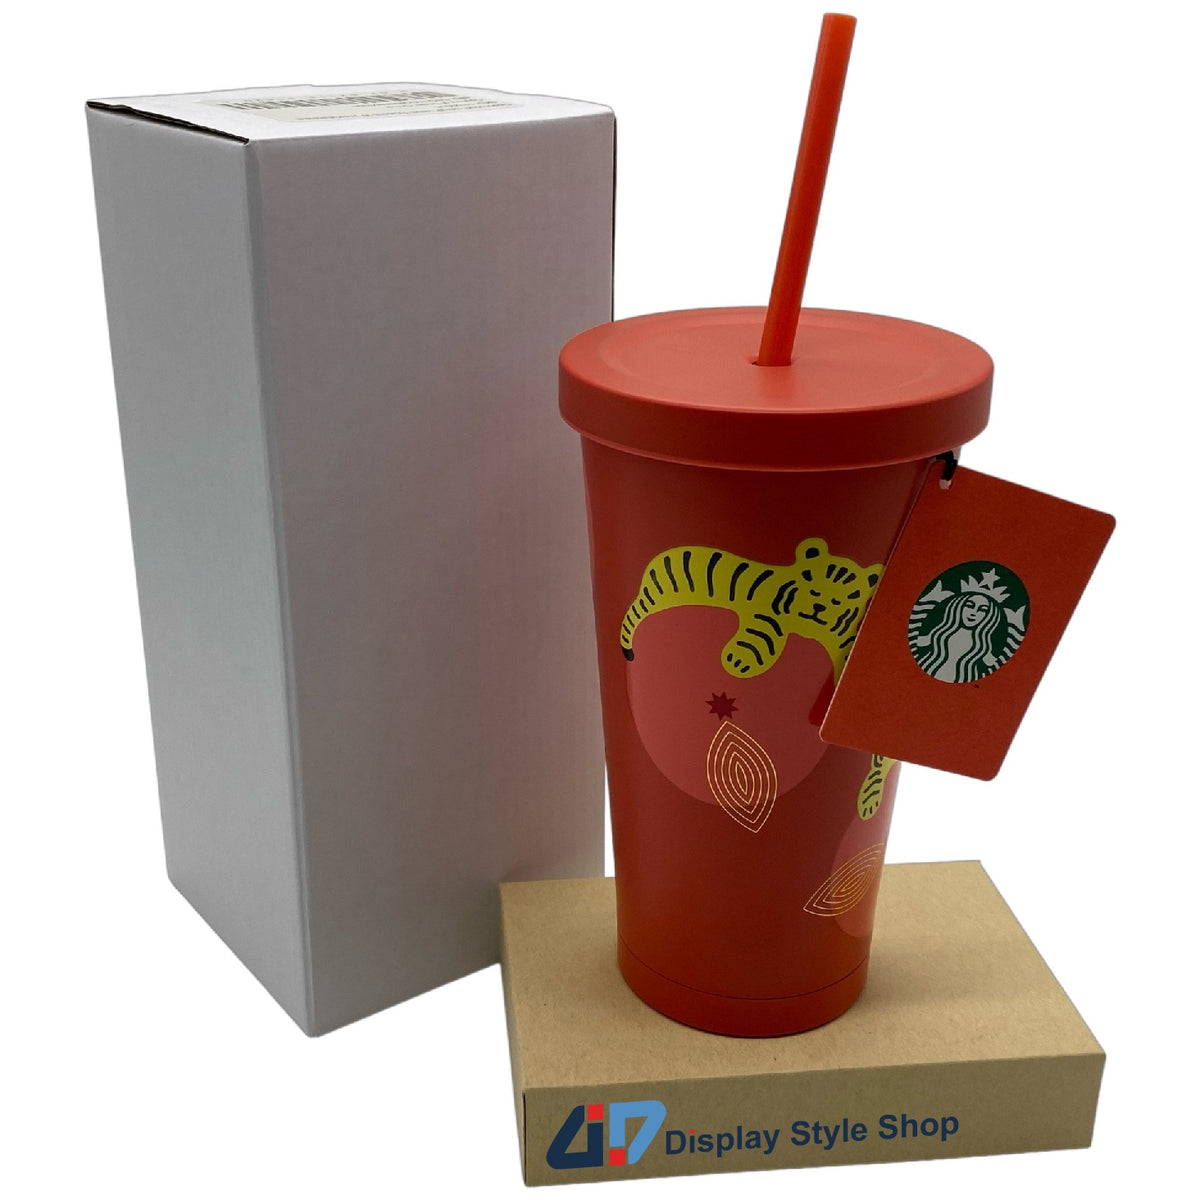 Stainless Steel Tumbler - Matte Orange, 12 fl oz  Starbucks mugs,  Stainless steel coffee tumbler, Secret starbucks drinks